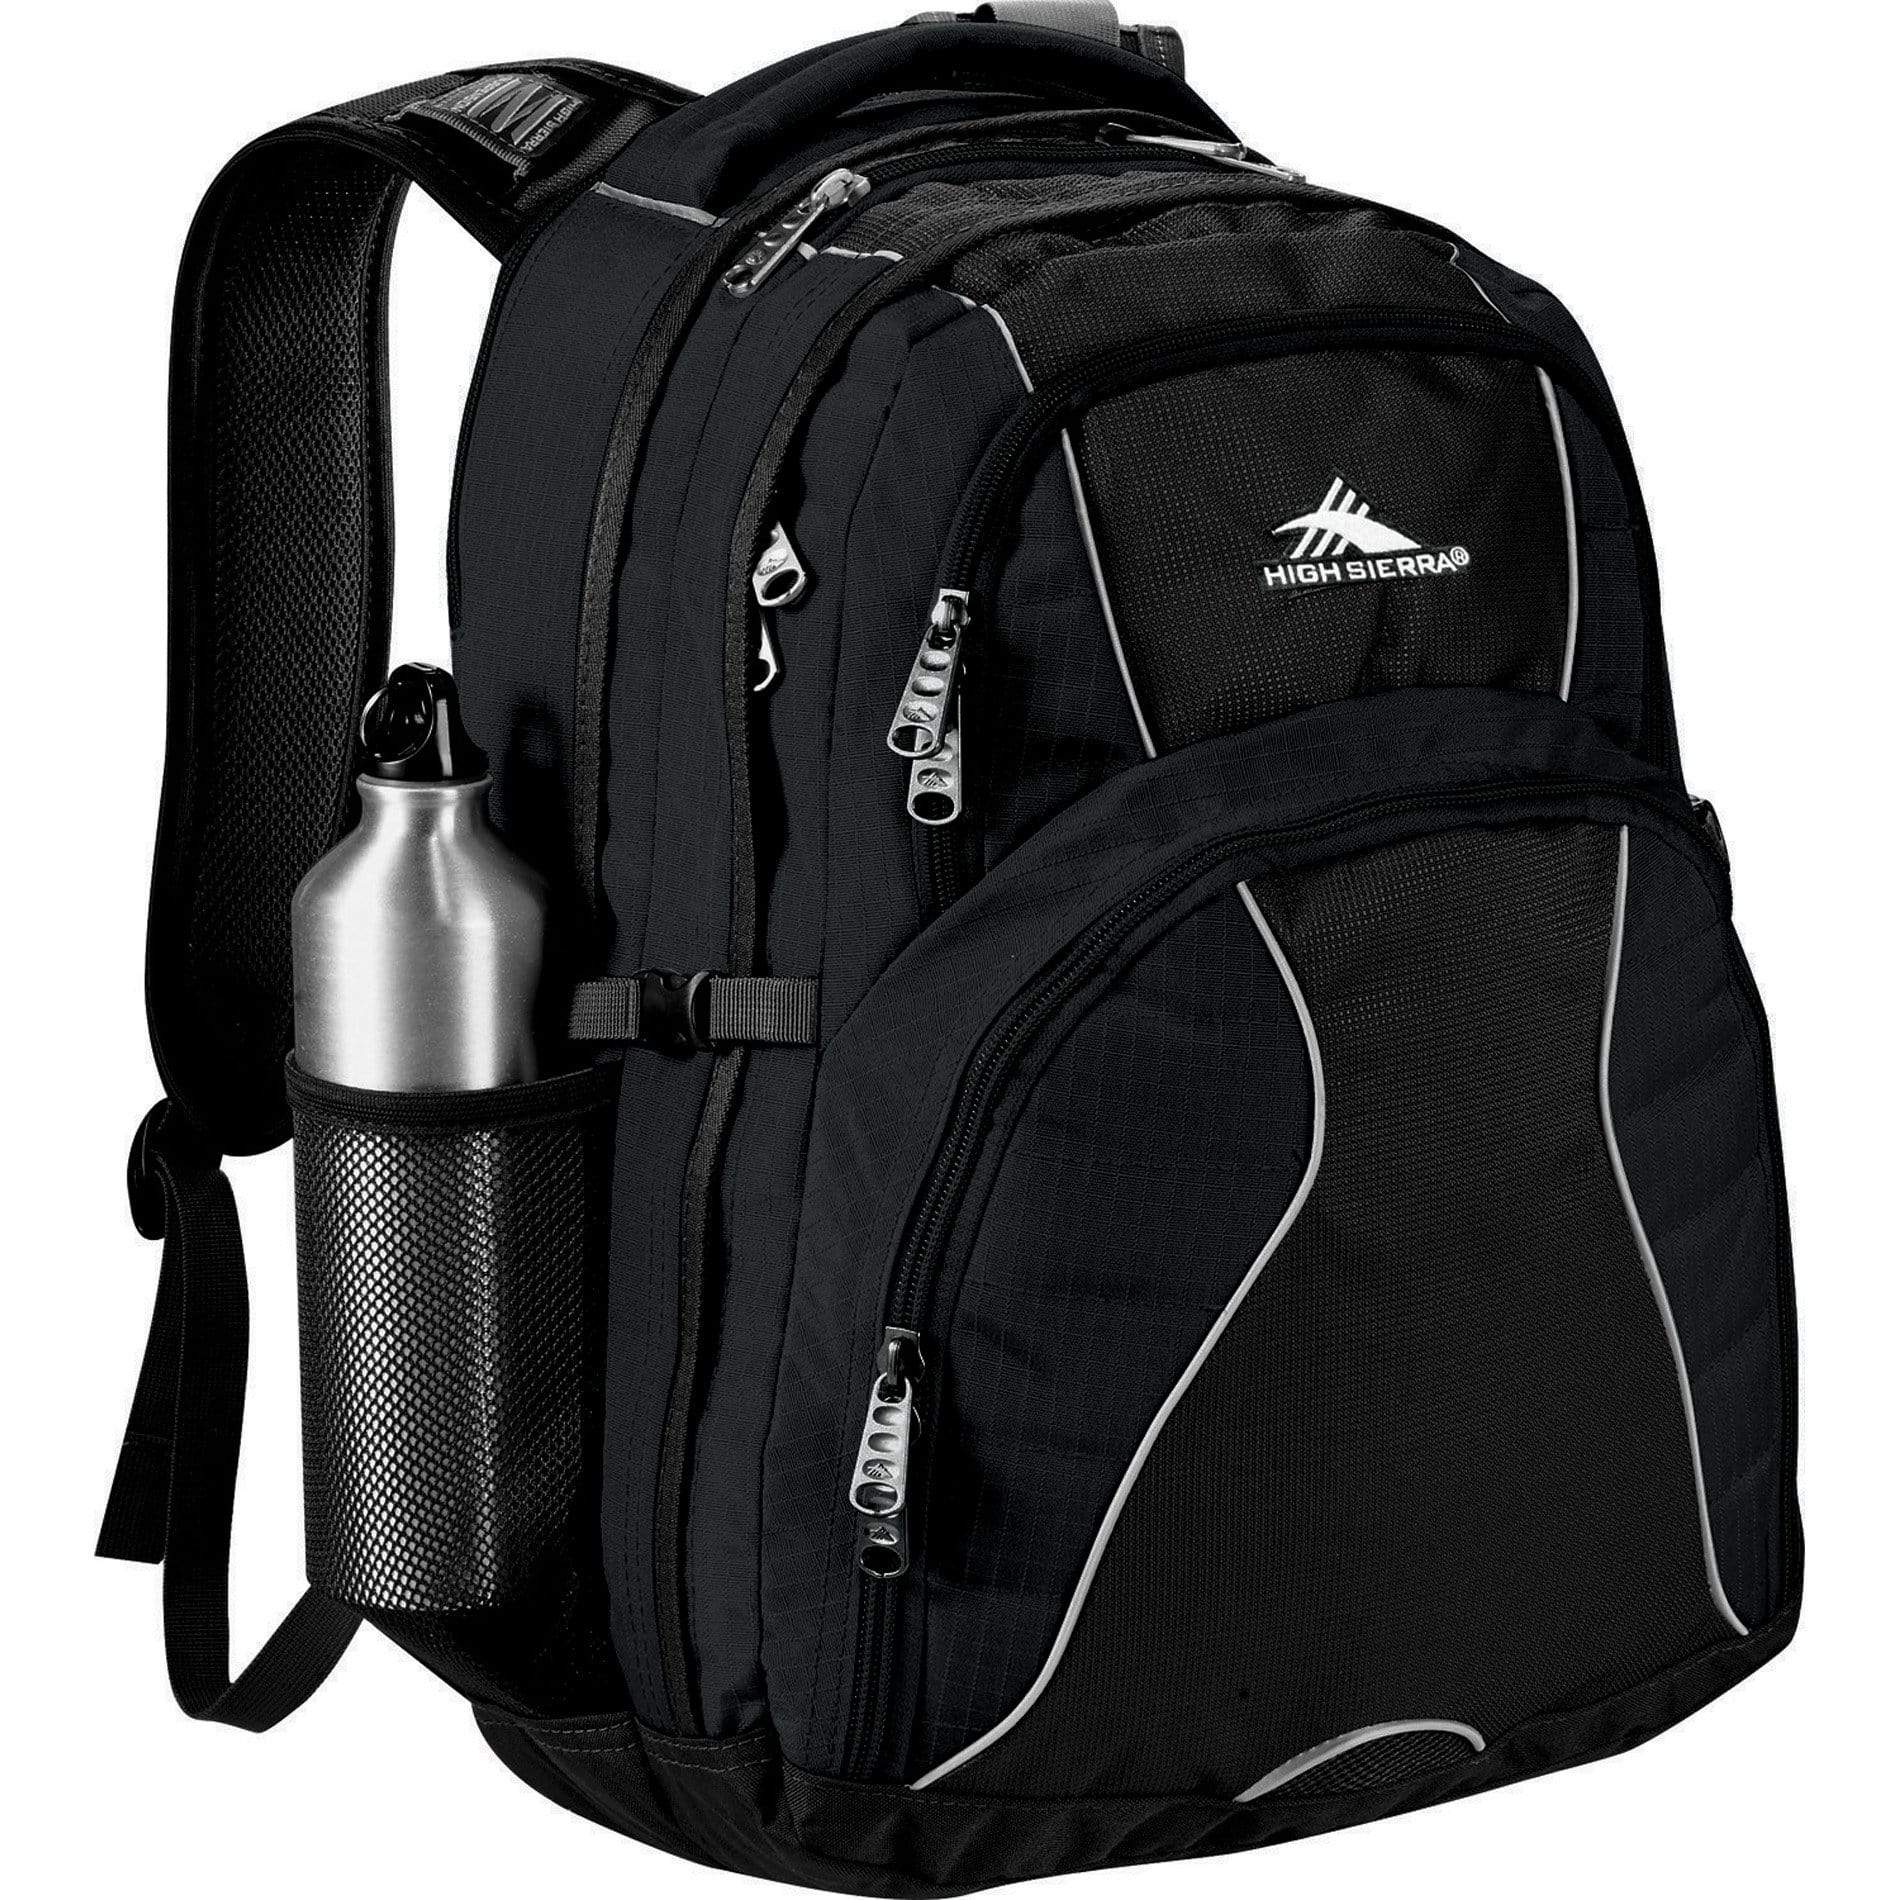 High Sierra Bags One size / Black High Sierra - Swerve 17" Computer Backpack